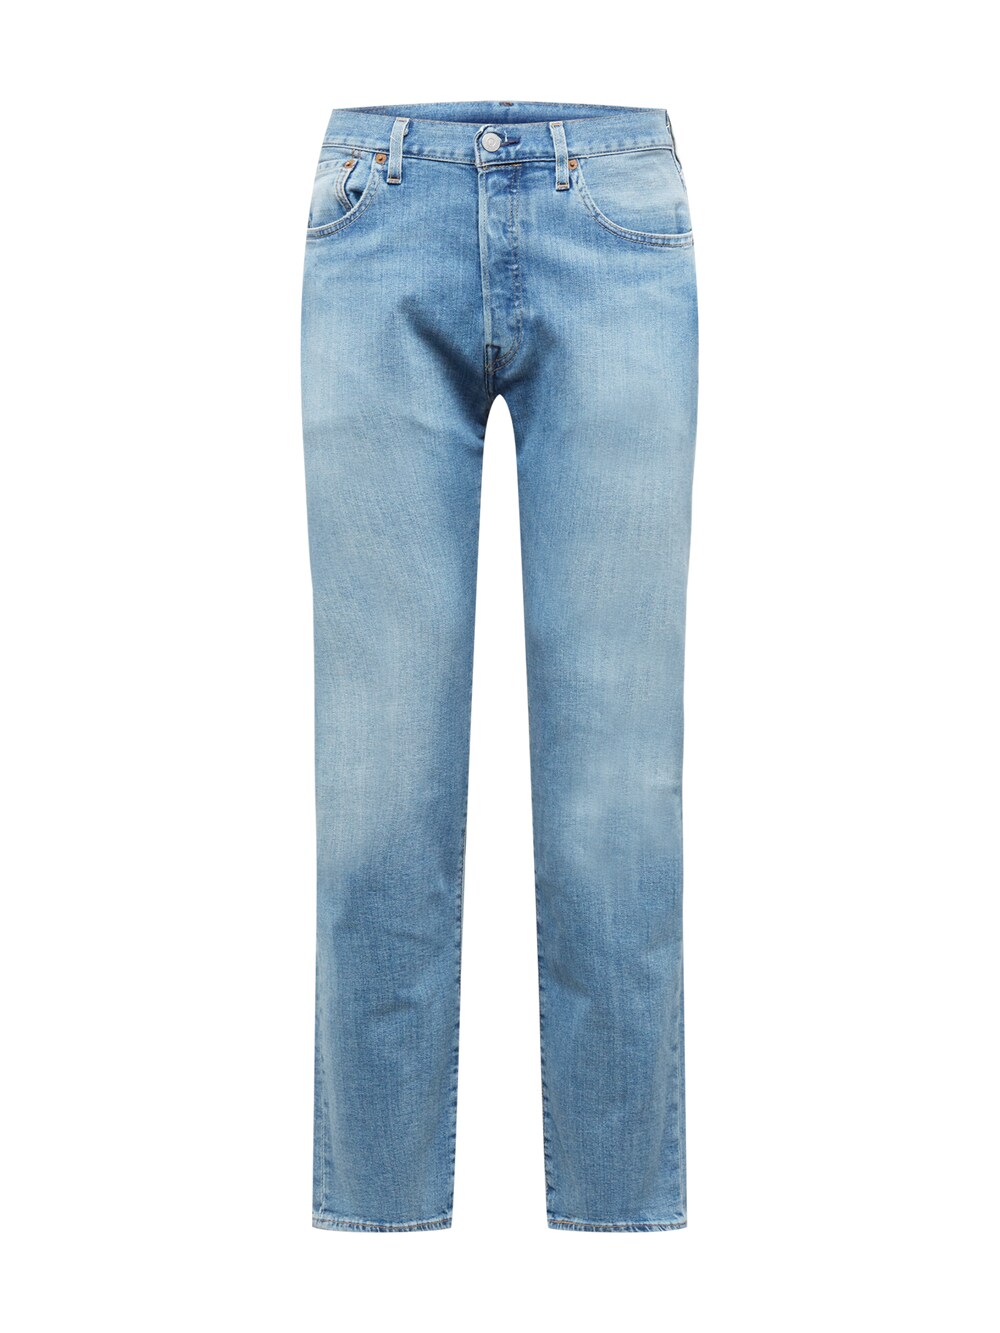 Обычные джинсы LEVIS 501 LEVIS ORIGINAL, синий